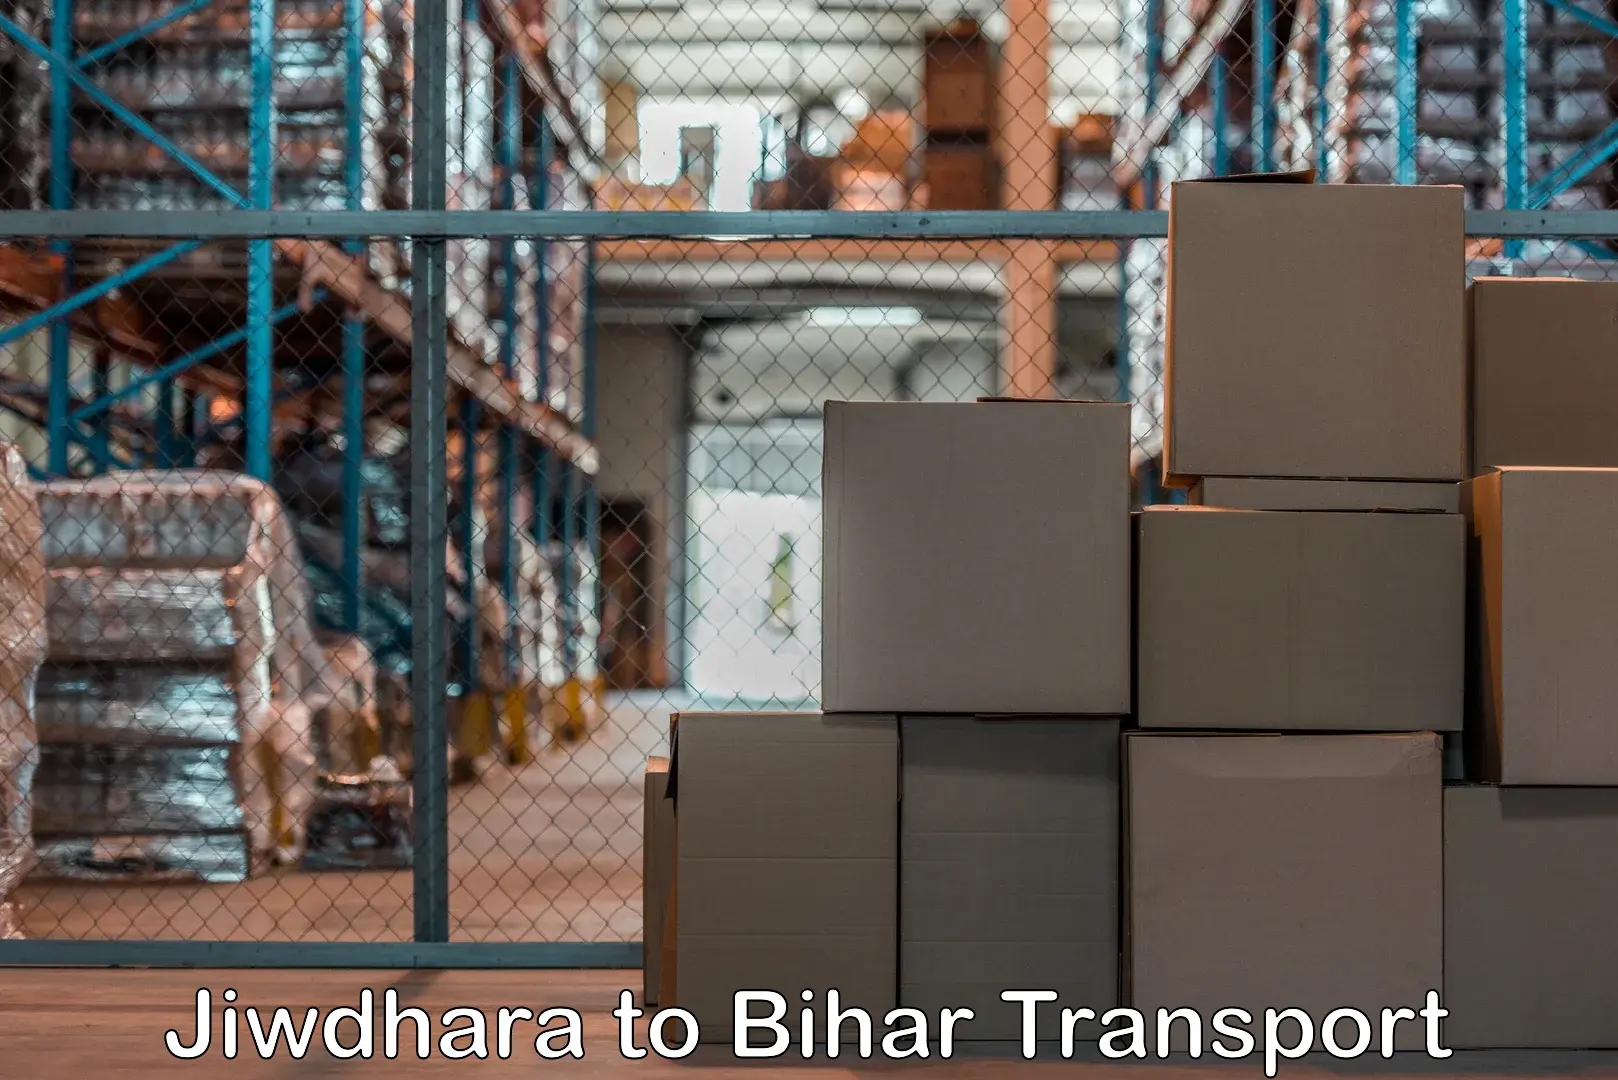 Furniture transport service Jiwdhara to Gopalganj